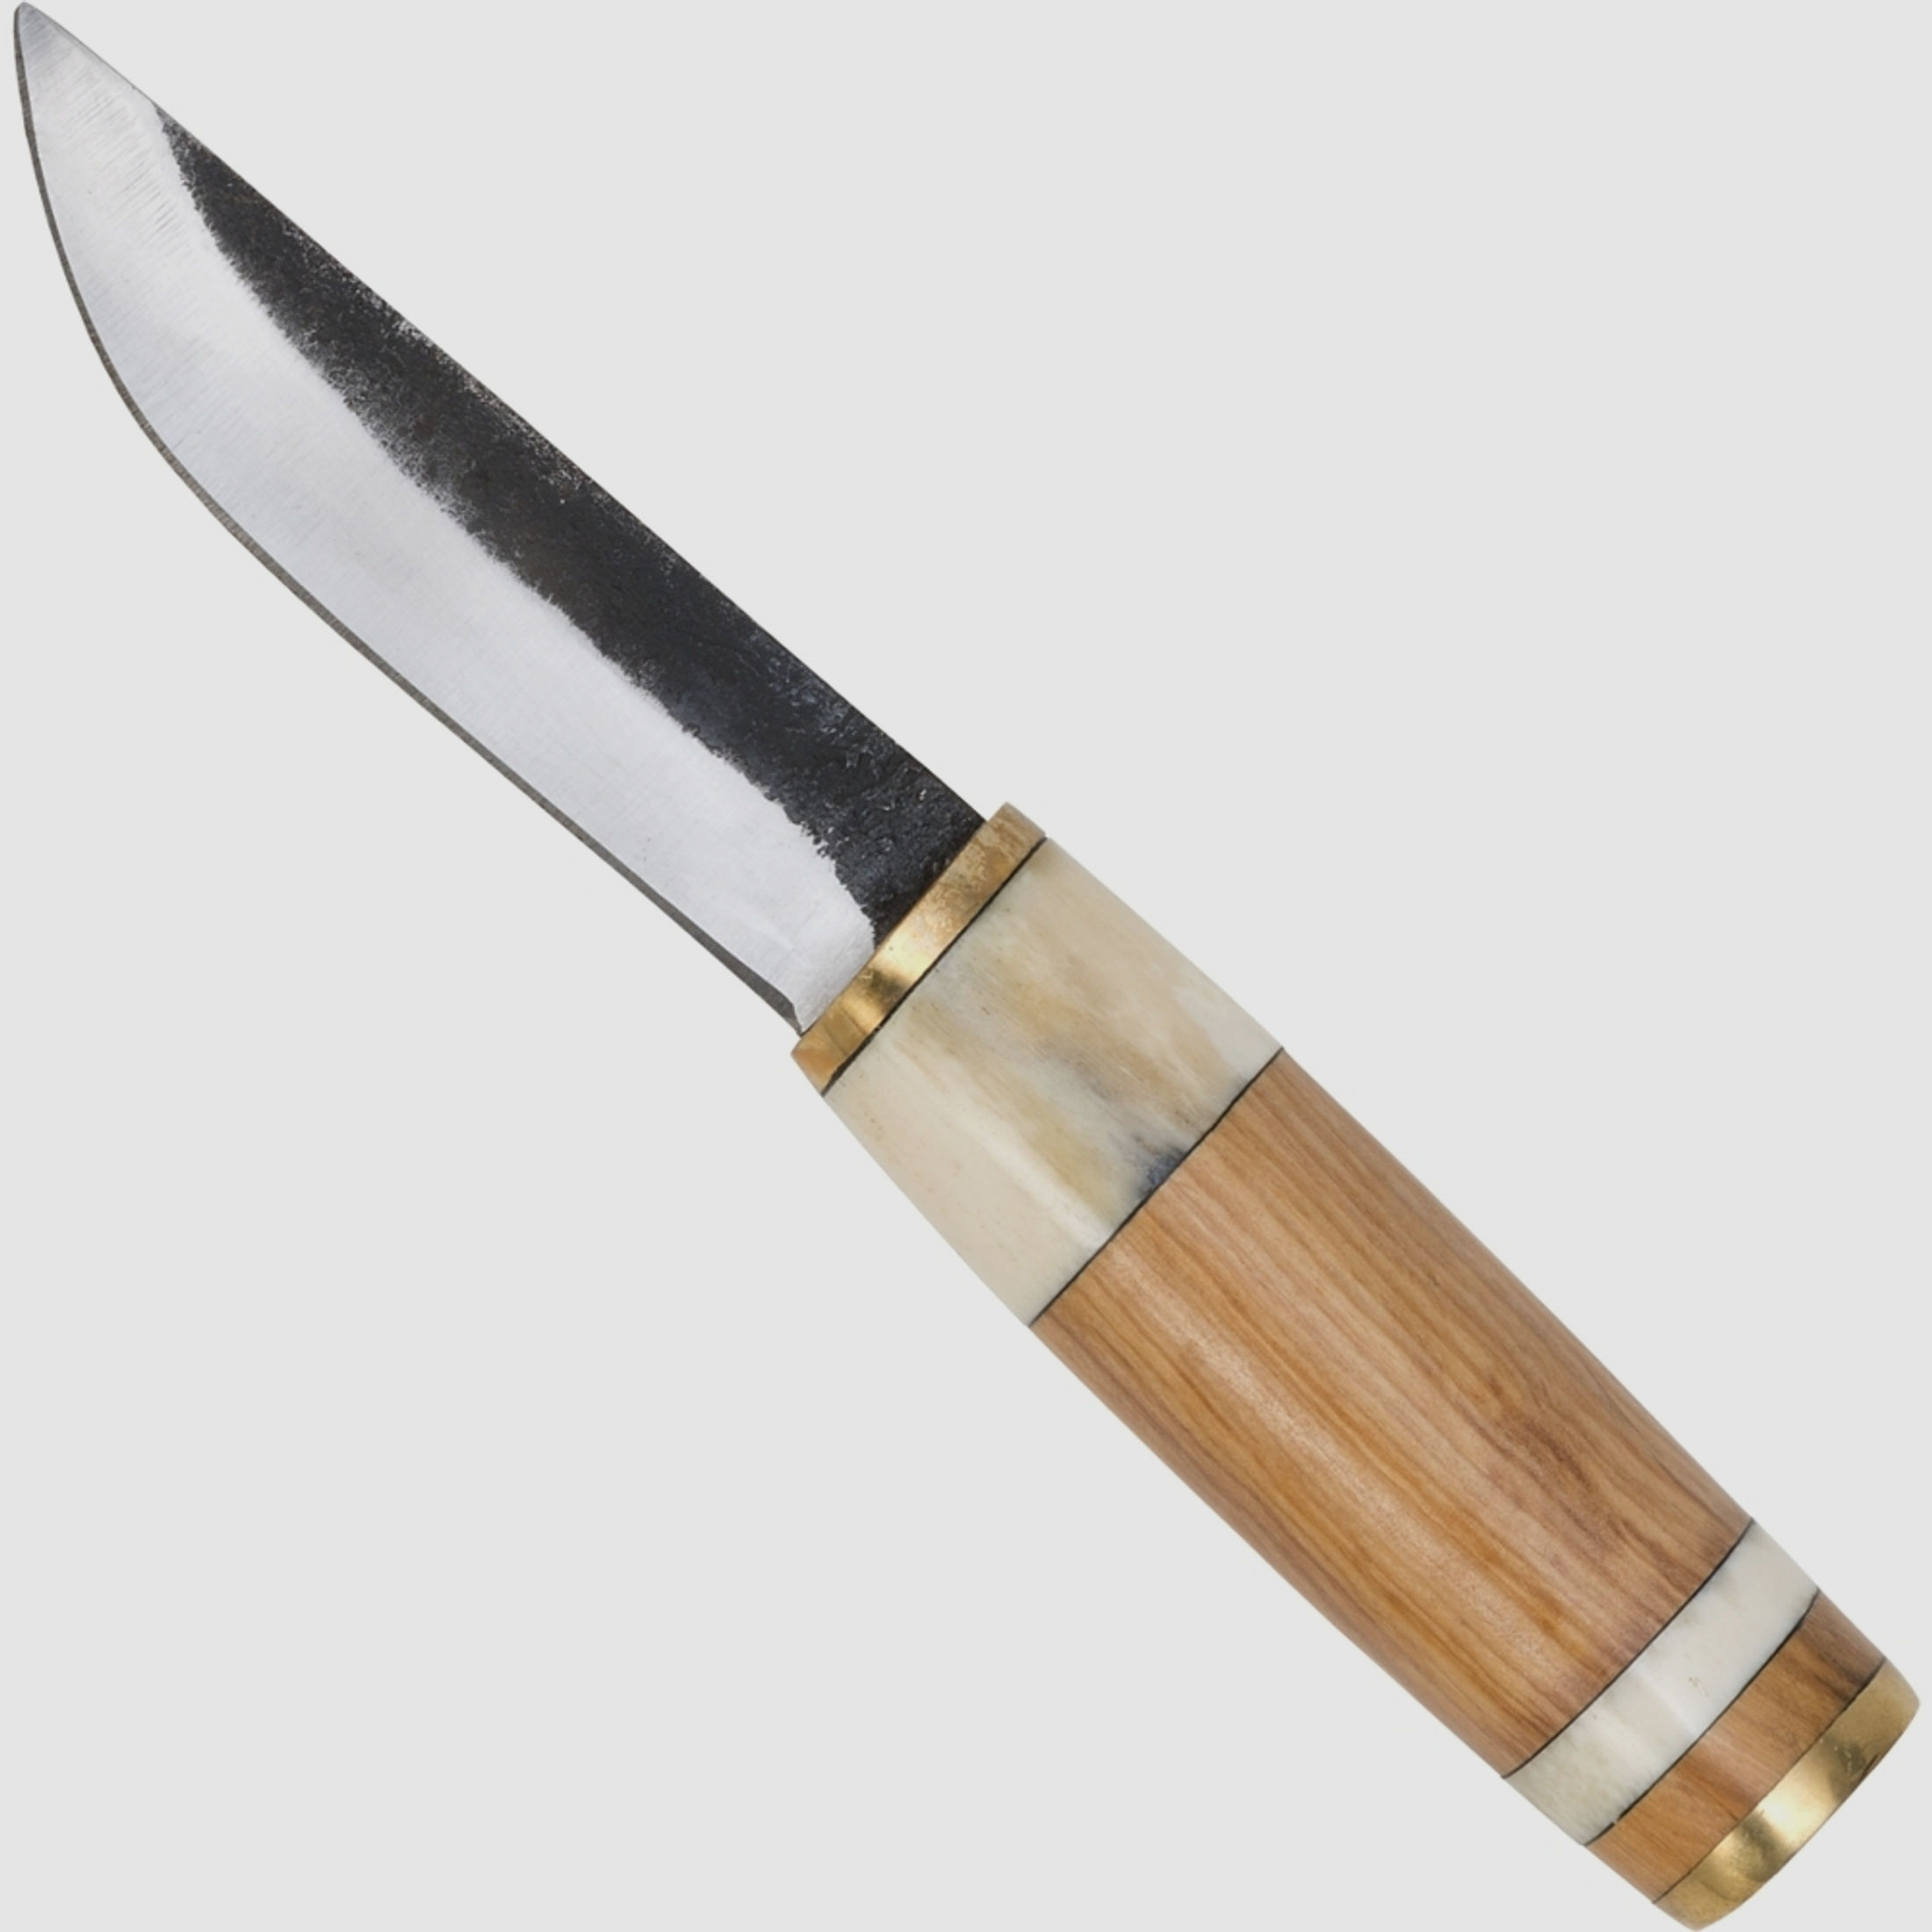 Mittelalter Messer Wikinger Style